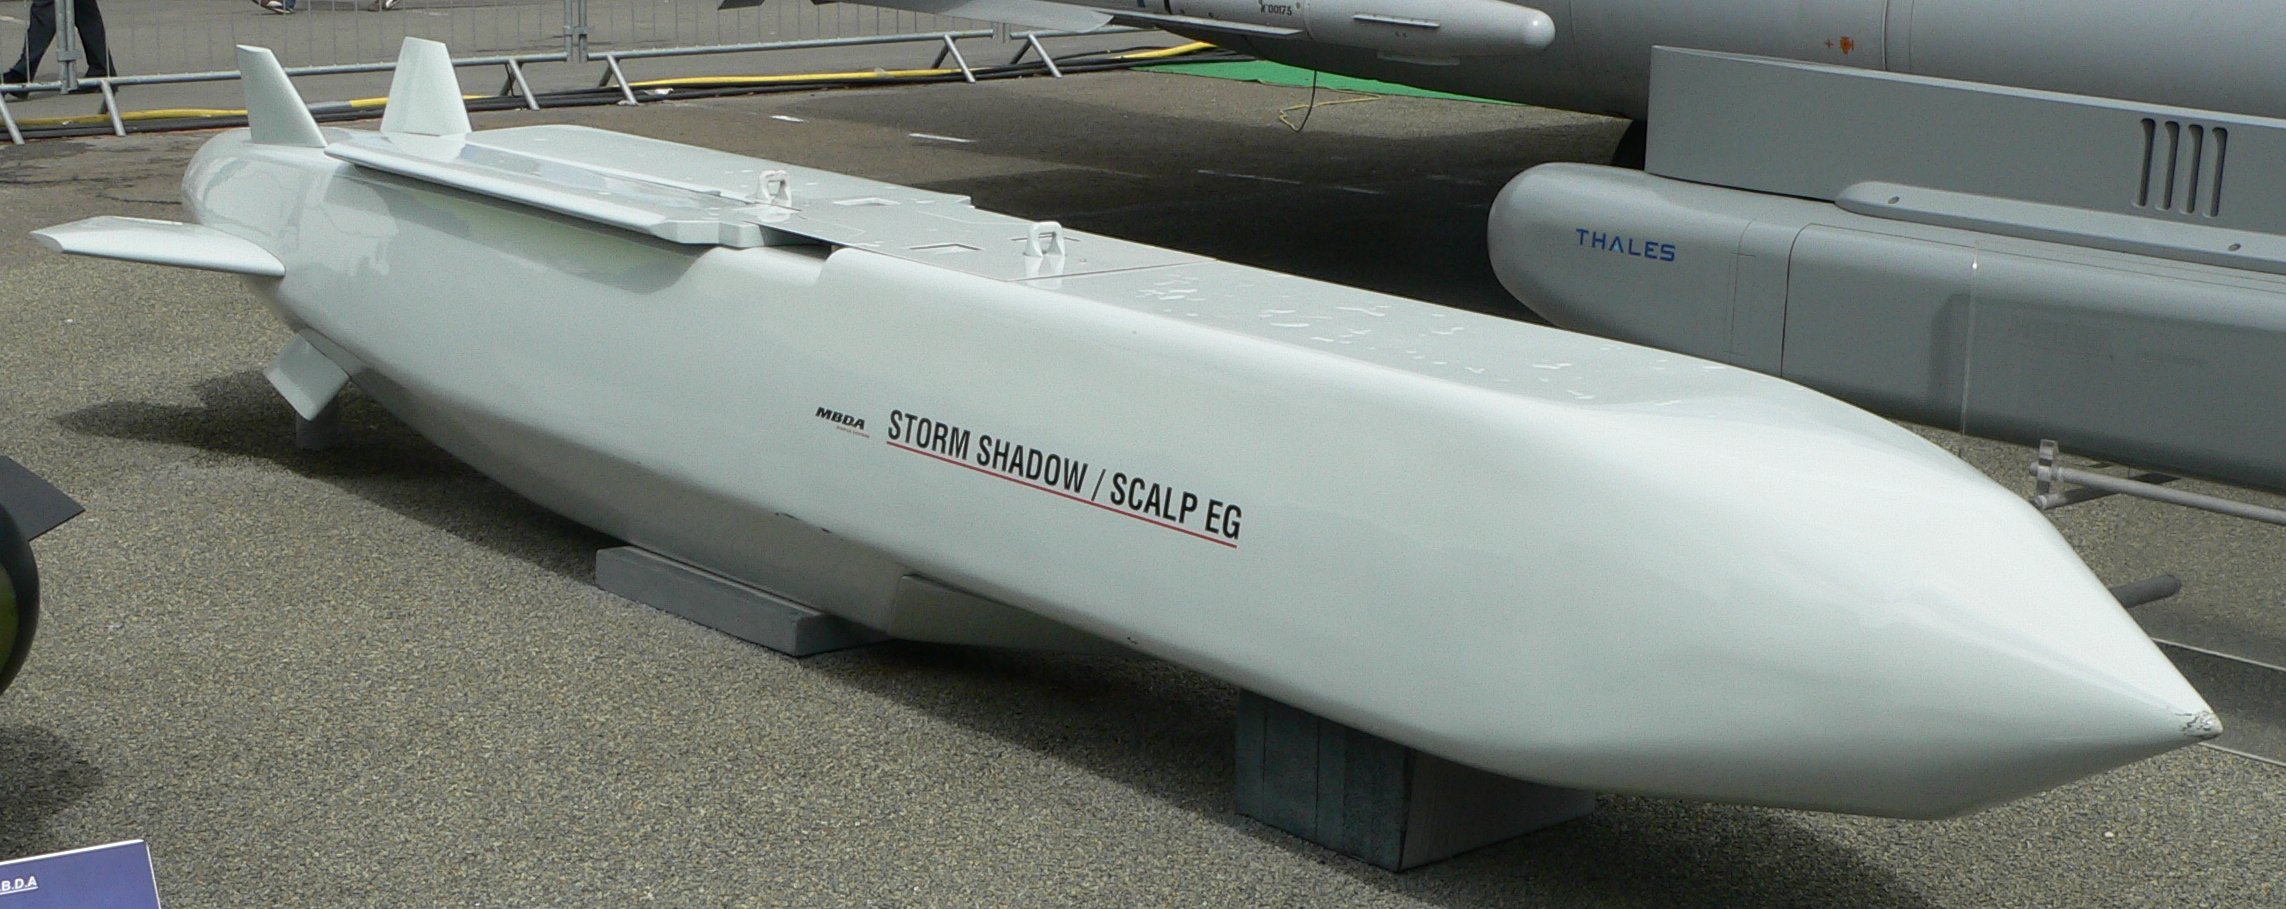 Gran Bretaña puede suministrar a Ucrania misiles de crucero Storm Shadow (SCALP), que se lanzan desde un avión y pueden alcanzar objetivos a una distancia de unos 600 km.